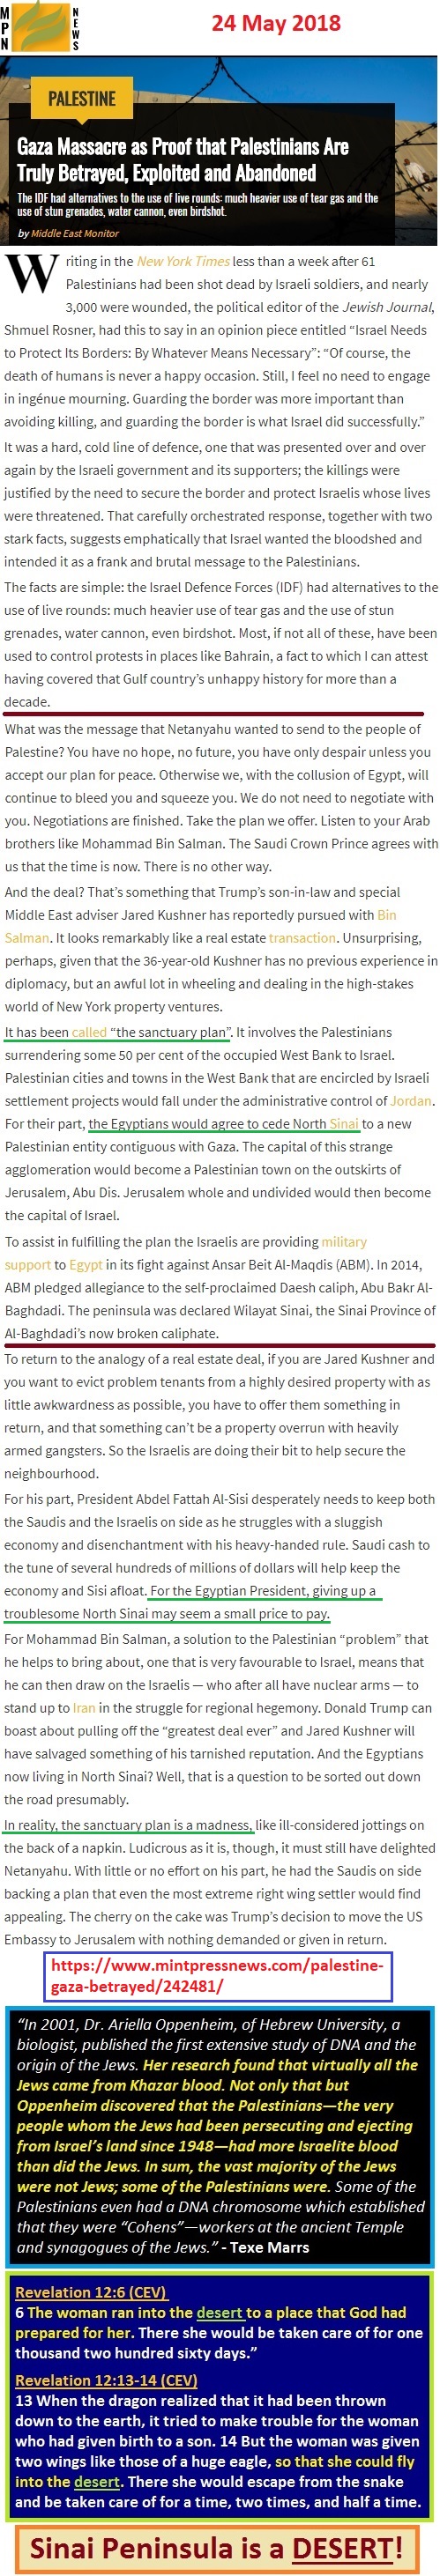 https://www.mintpressnews.com/palestine-gaza-betrayed/242481/